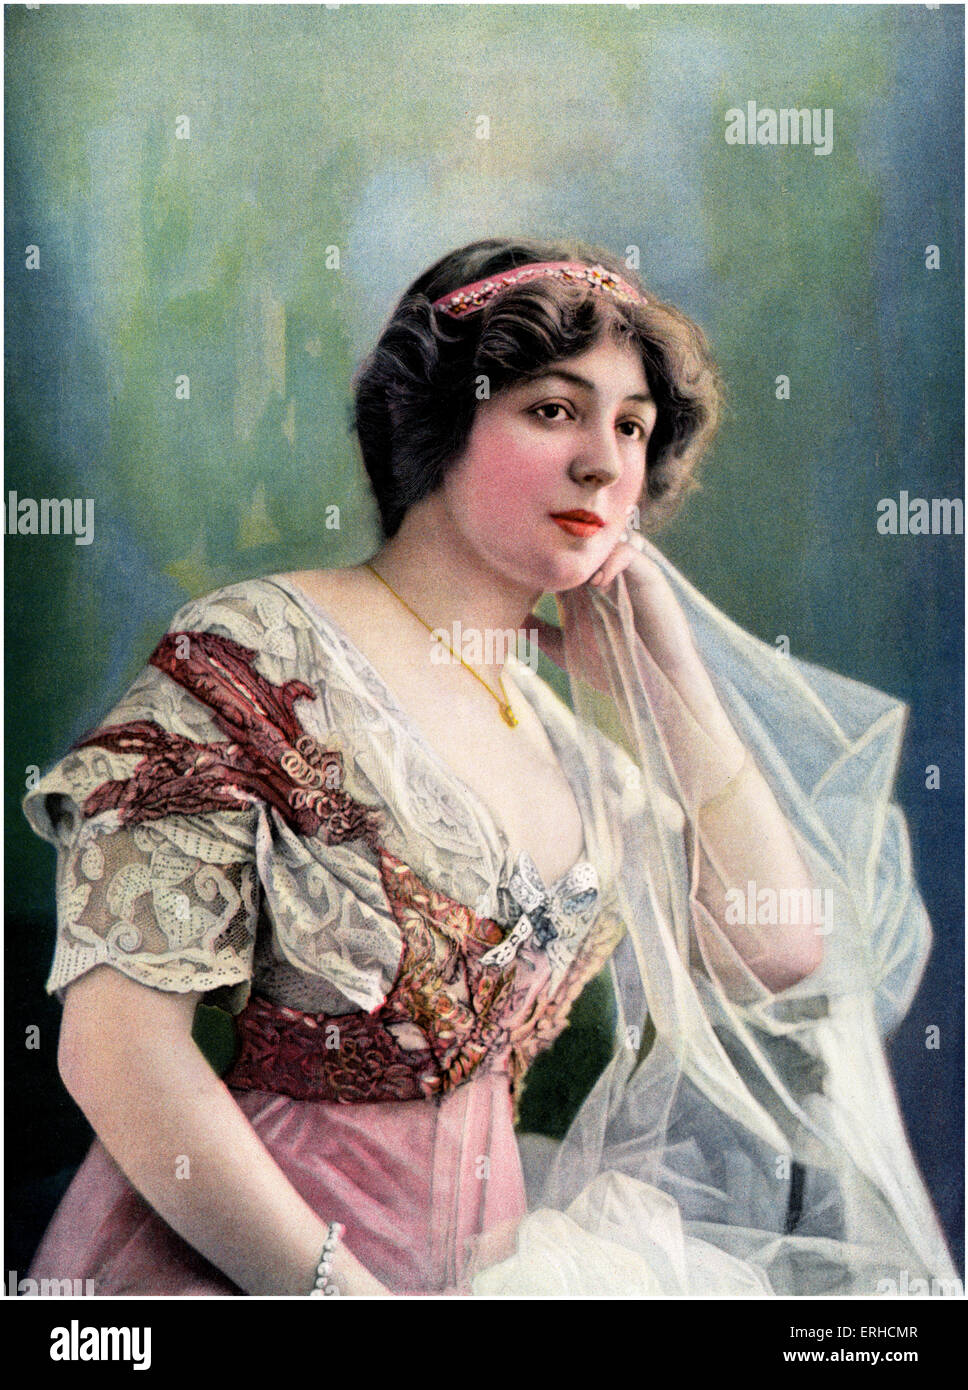 Marthe Regnier, l'actrice française, du théâtre du Vaudeville. Le théâtre, 1908. 26 novembre 1880 - 30 août 1967. Banque D'Images